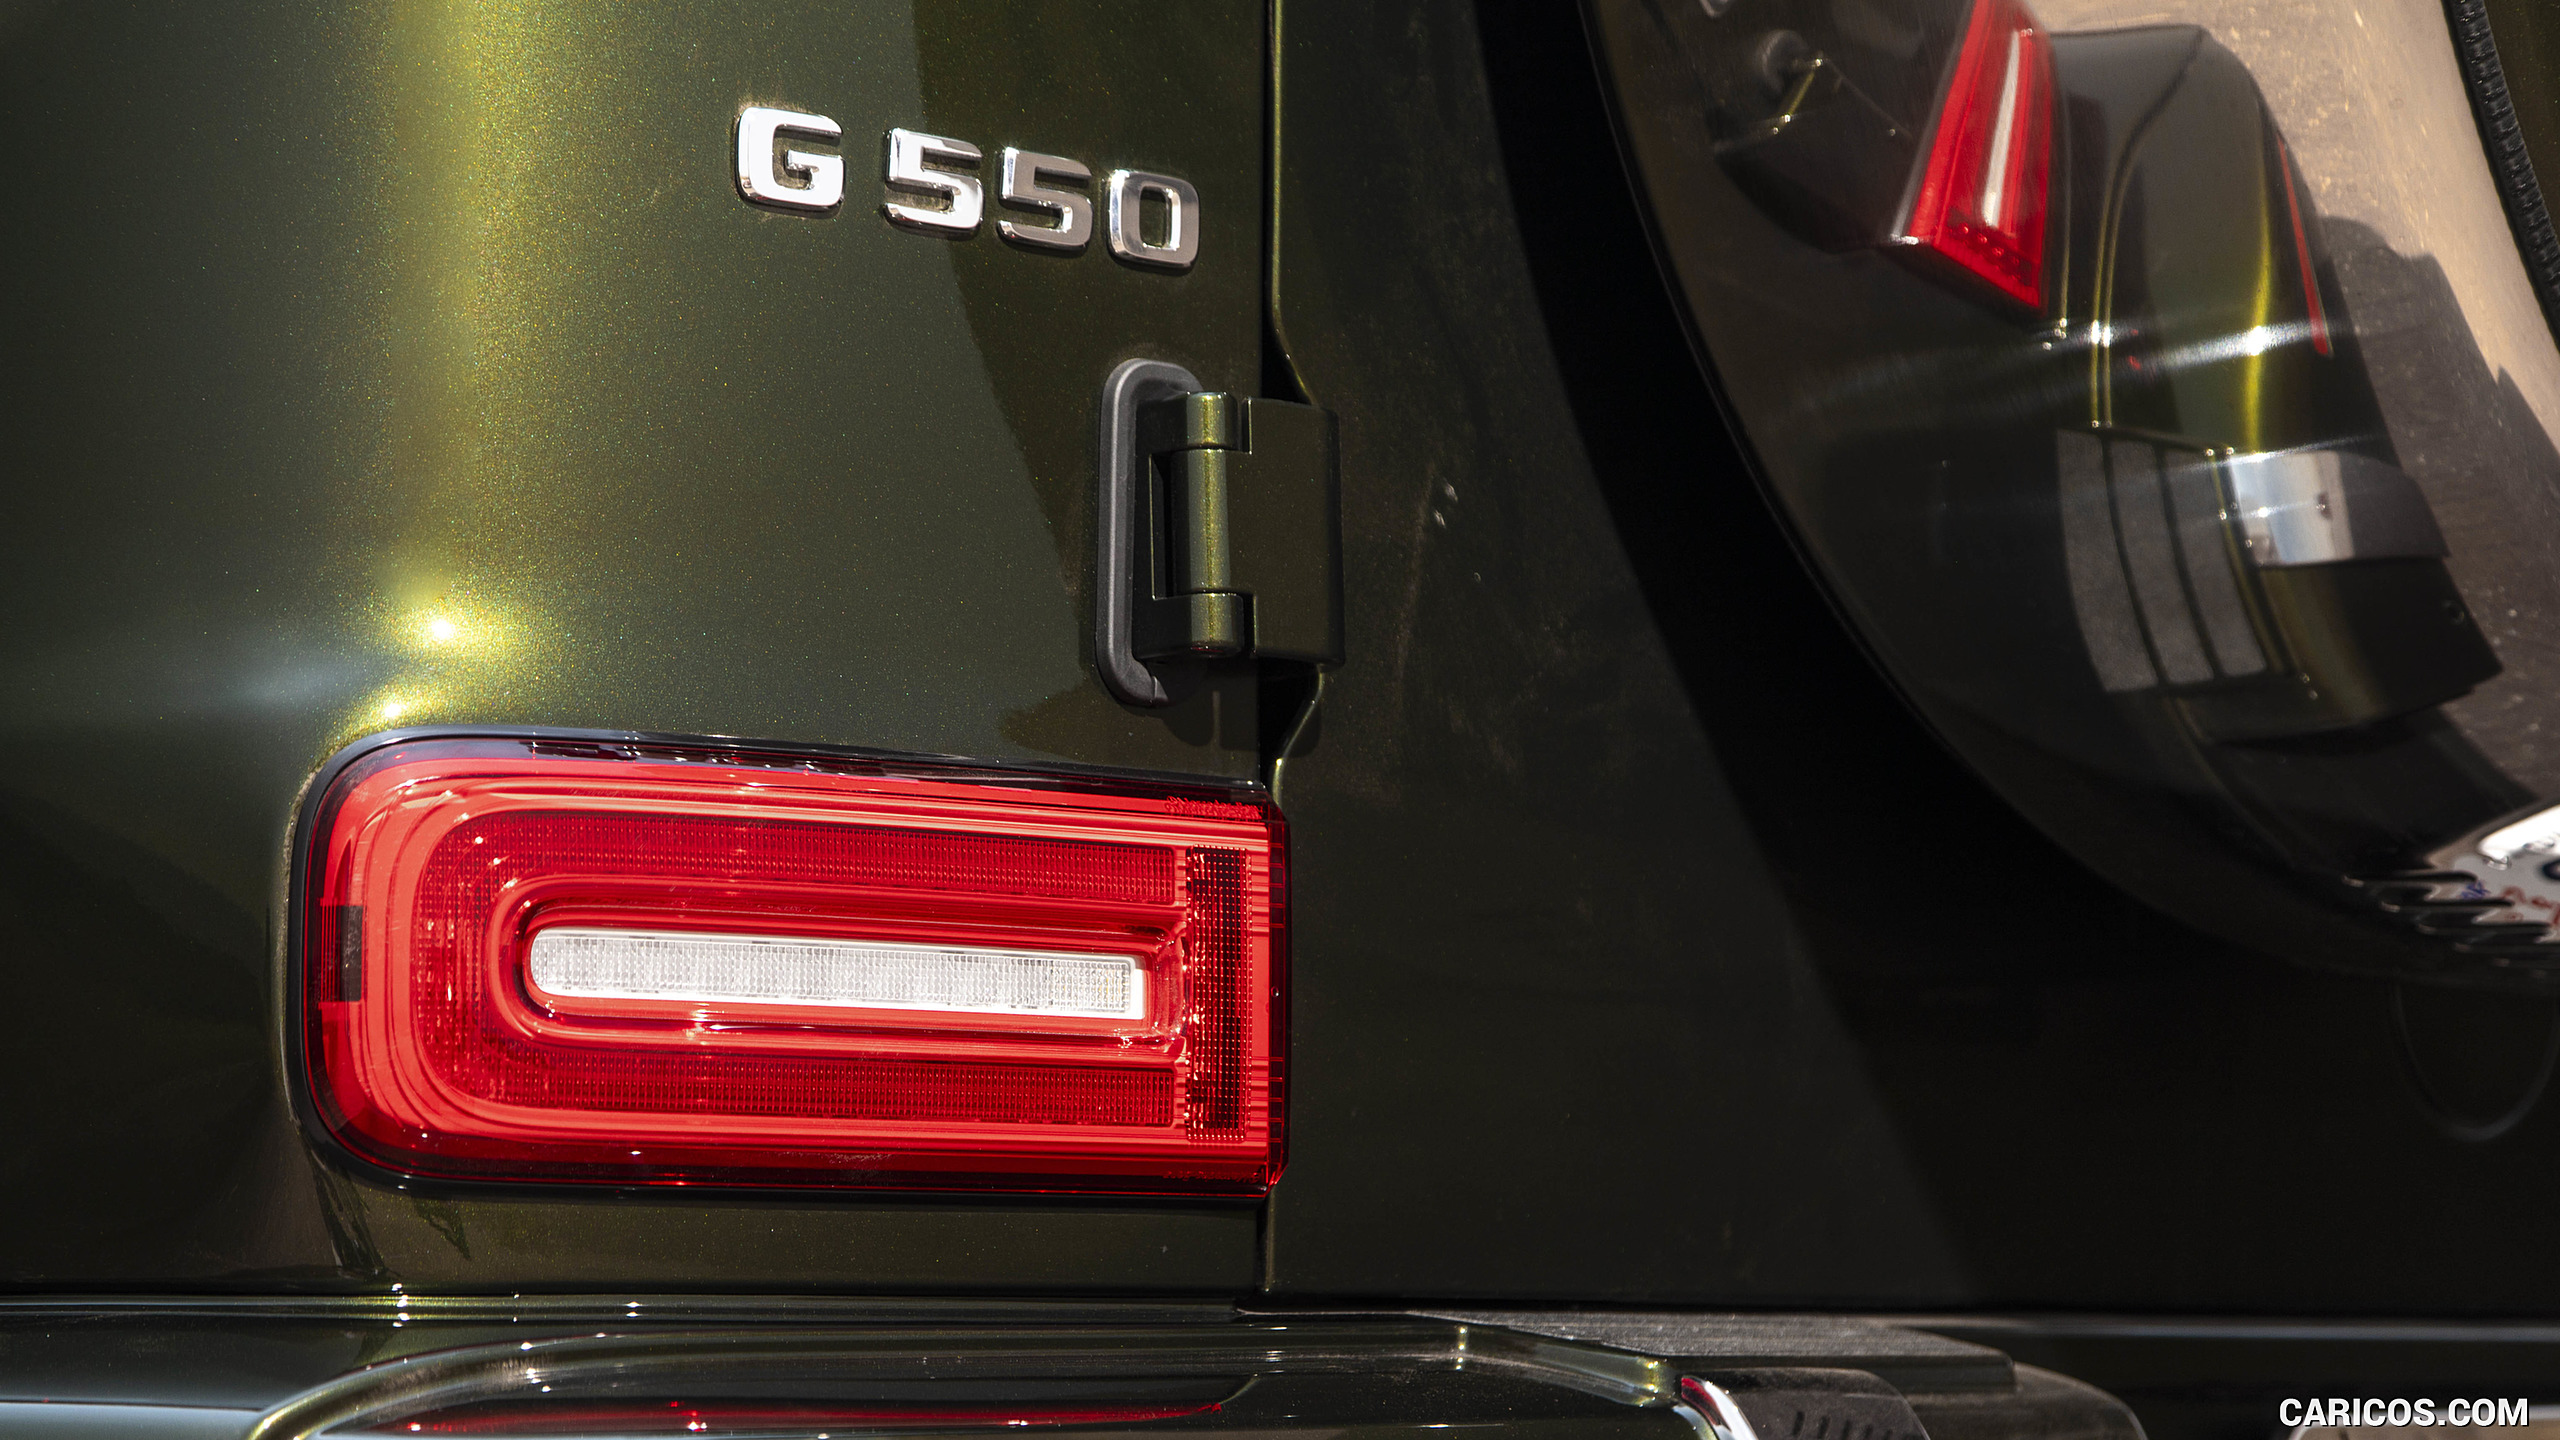 2019 Mercedes-Benz G550 G-Class (U.S.-Spec) - Tail Light, #365 of 397